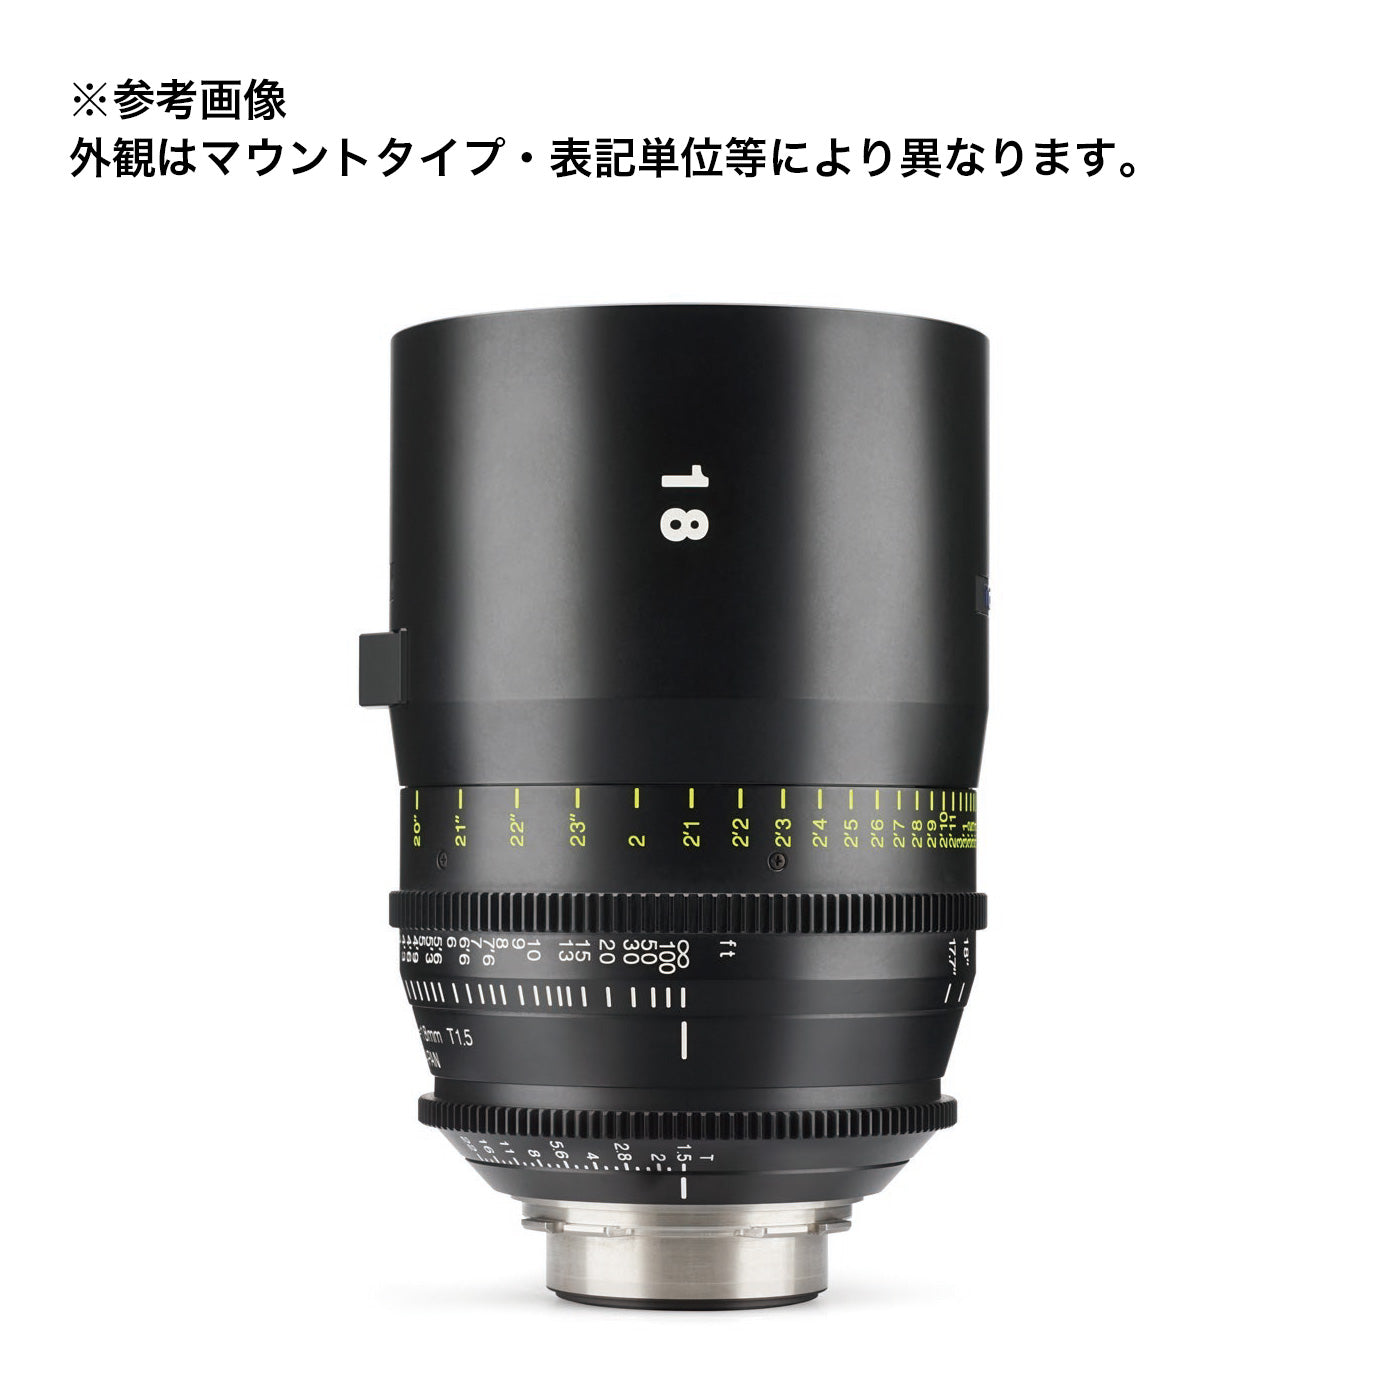 Tokina(トキナー) シネマプライムレンズ VISTA 18mm T1.5 CINEMA LENS Eマウント メートル表記 [264149]